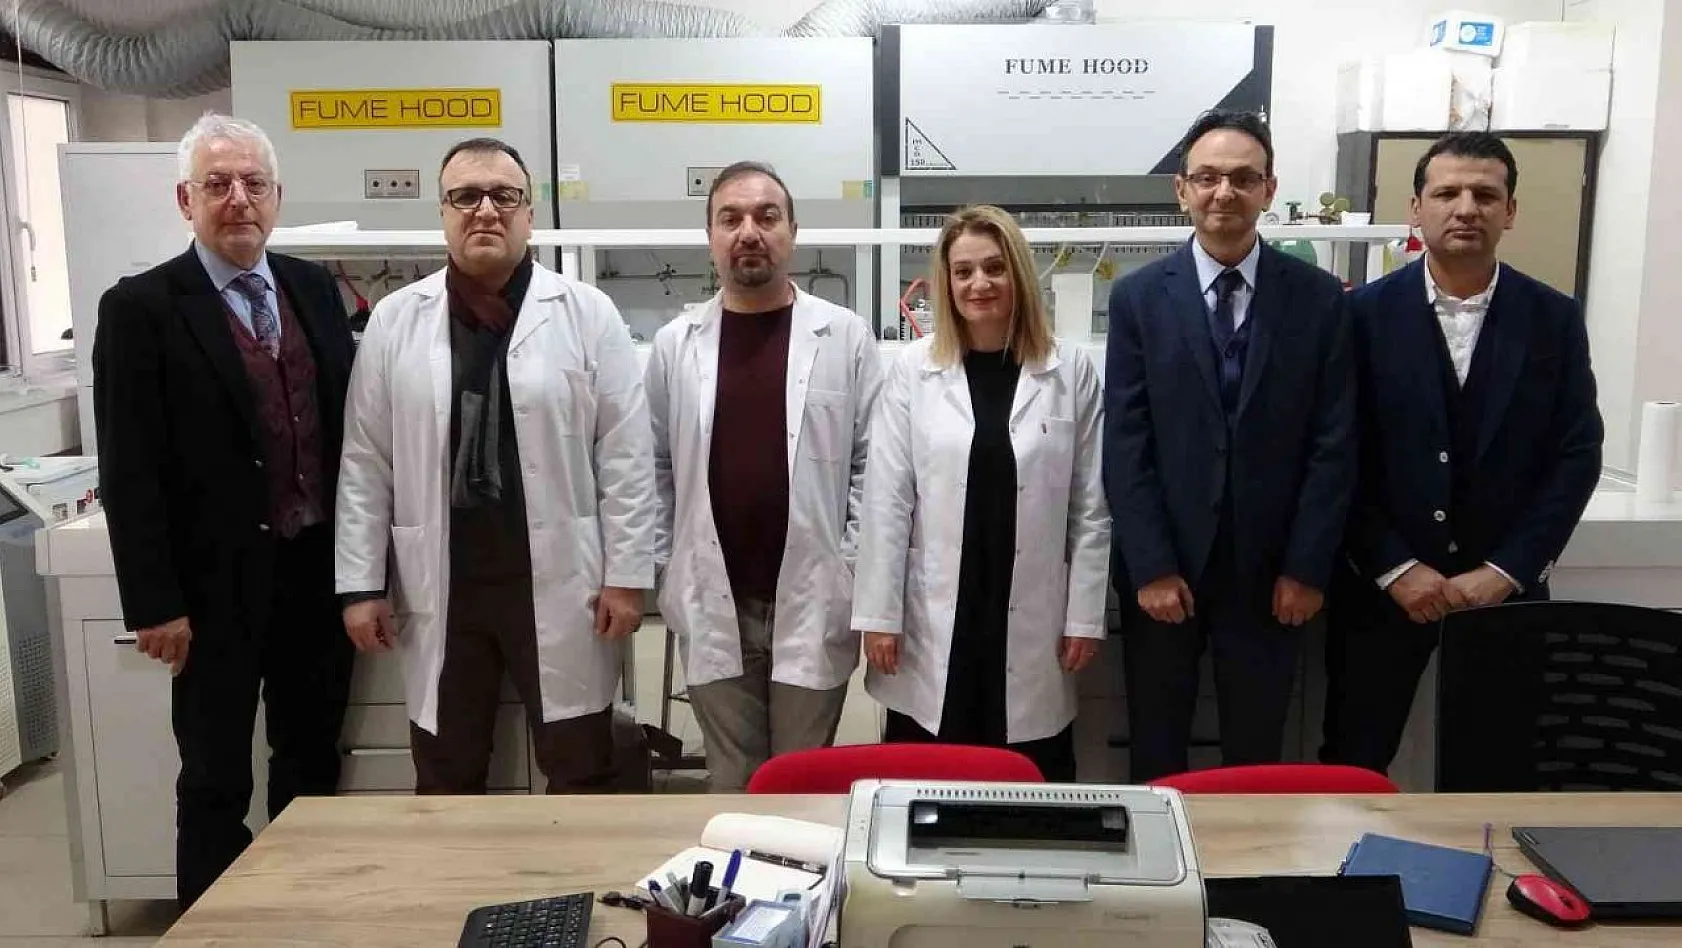 Türk bilim insanlarından FMF hastalığı için umut veren proje